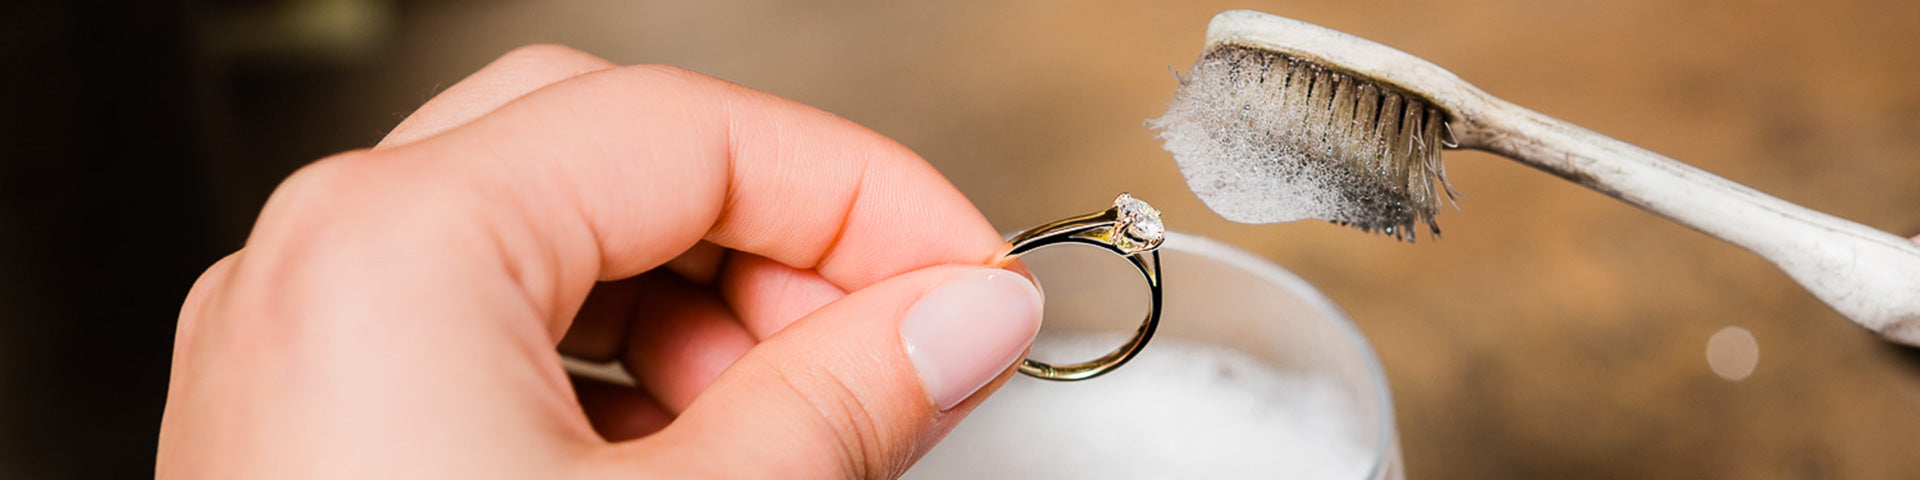 Comment nettoyer un bijou pour raviver sa brillance ? - Mediam Suisse